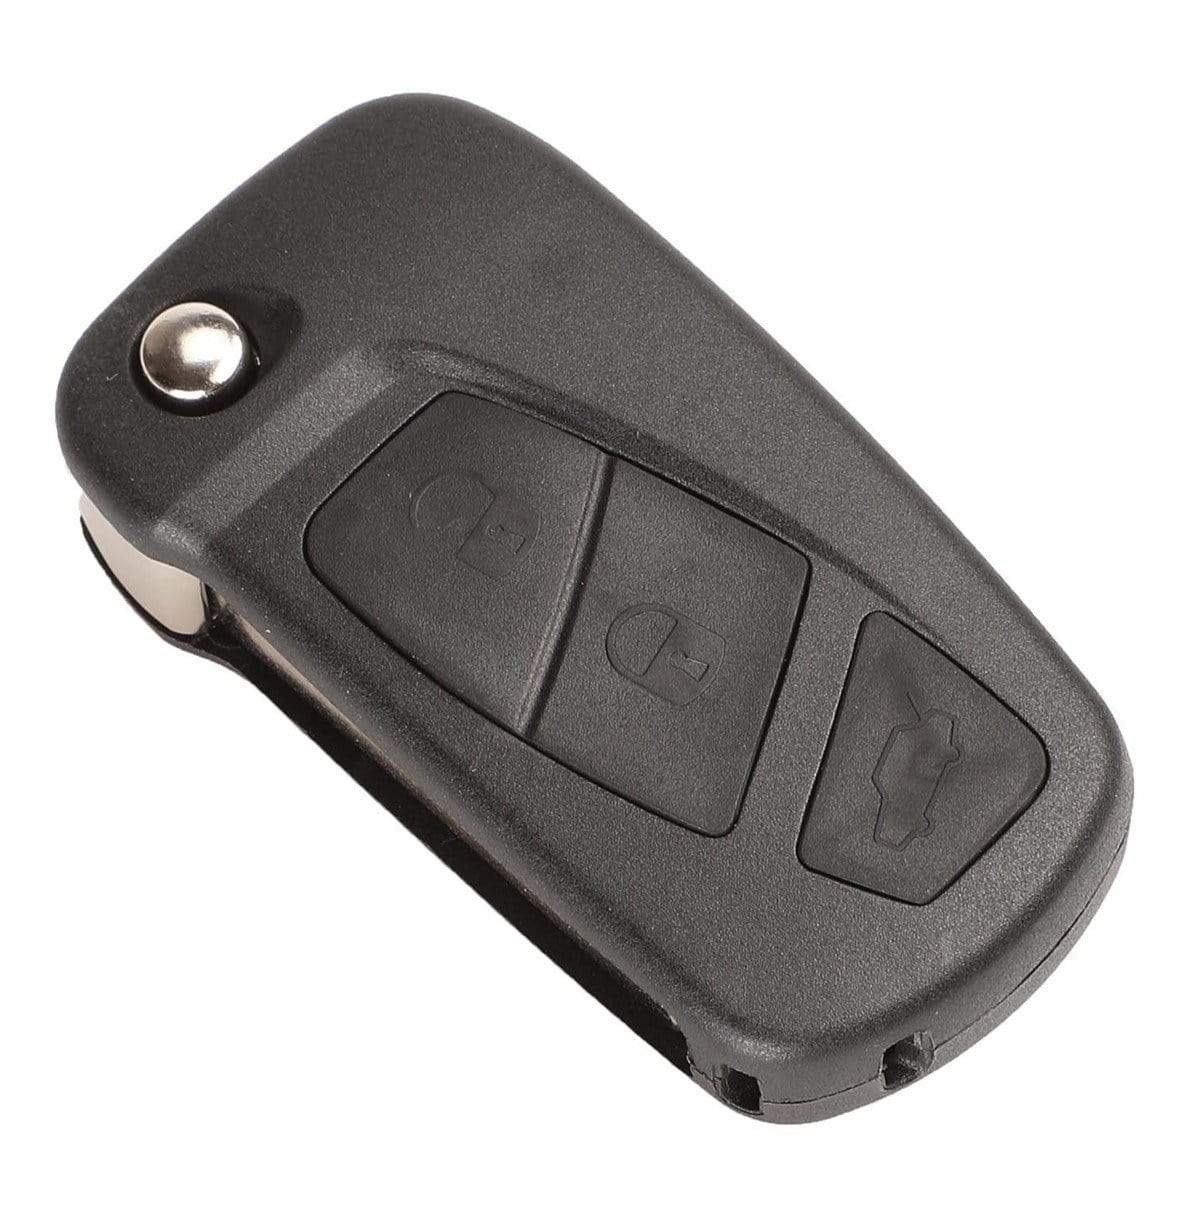 Fekete színű, 2 gombos Peugeot kulcsház, bicskakulcs SIP22 kulcsszárral.